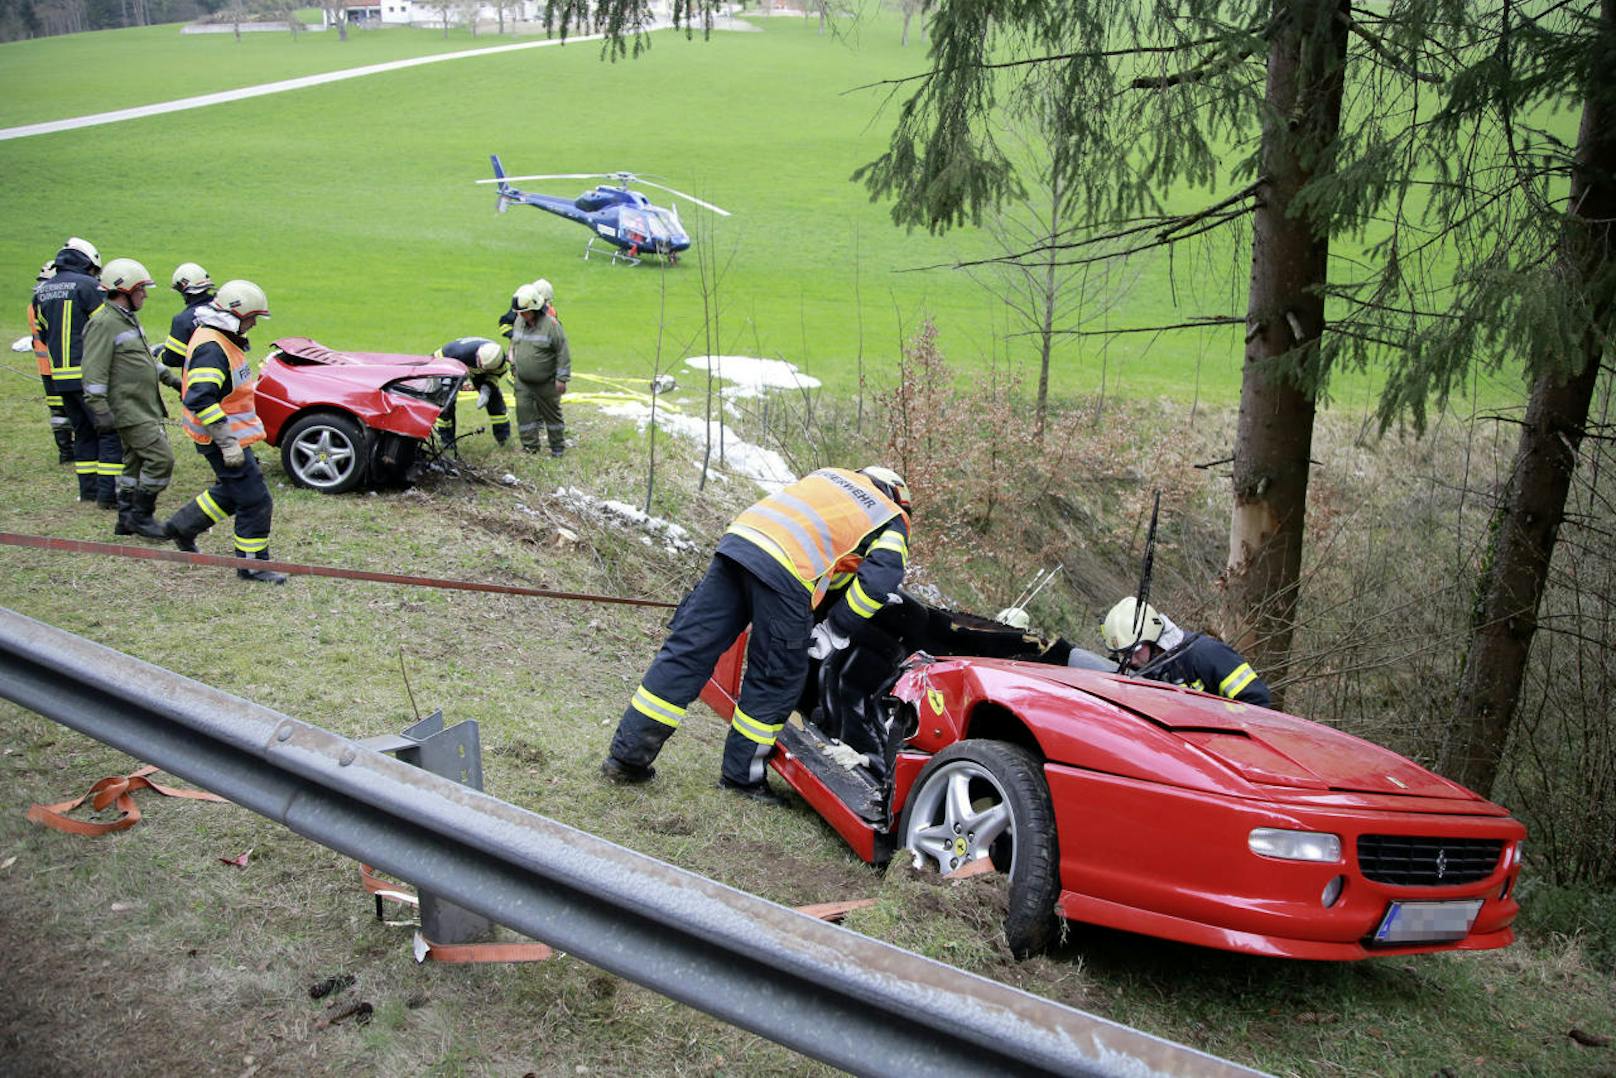 Der Ferrari wurde in zwei Teile gerissen, zwei Personen starben.